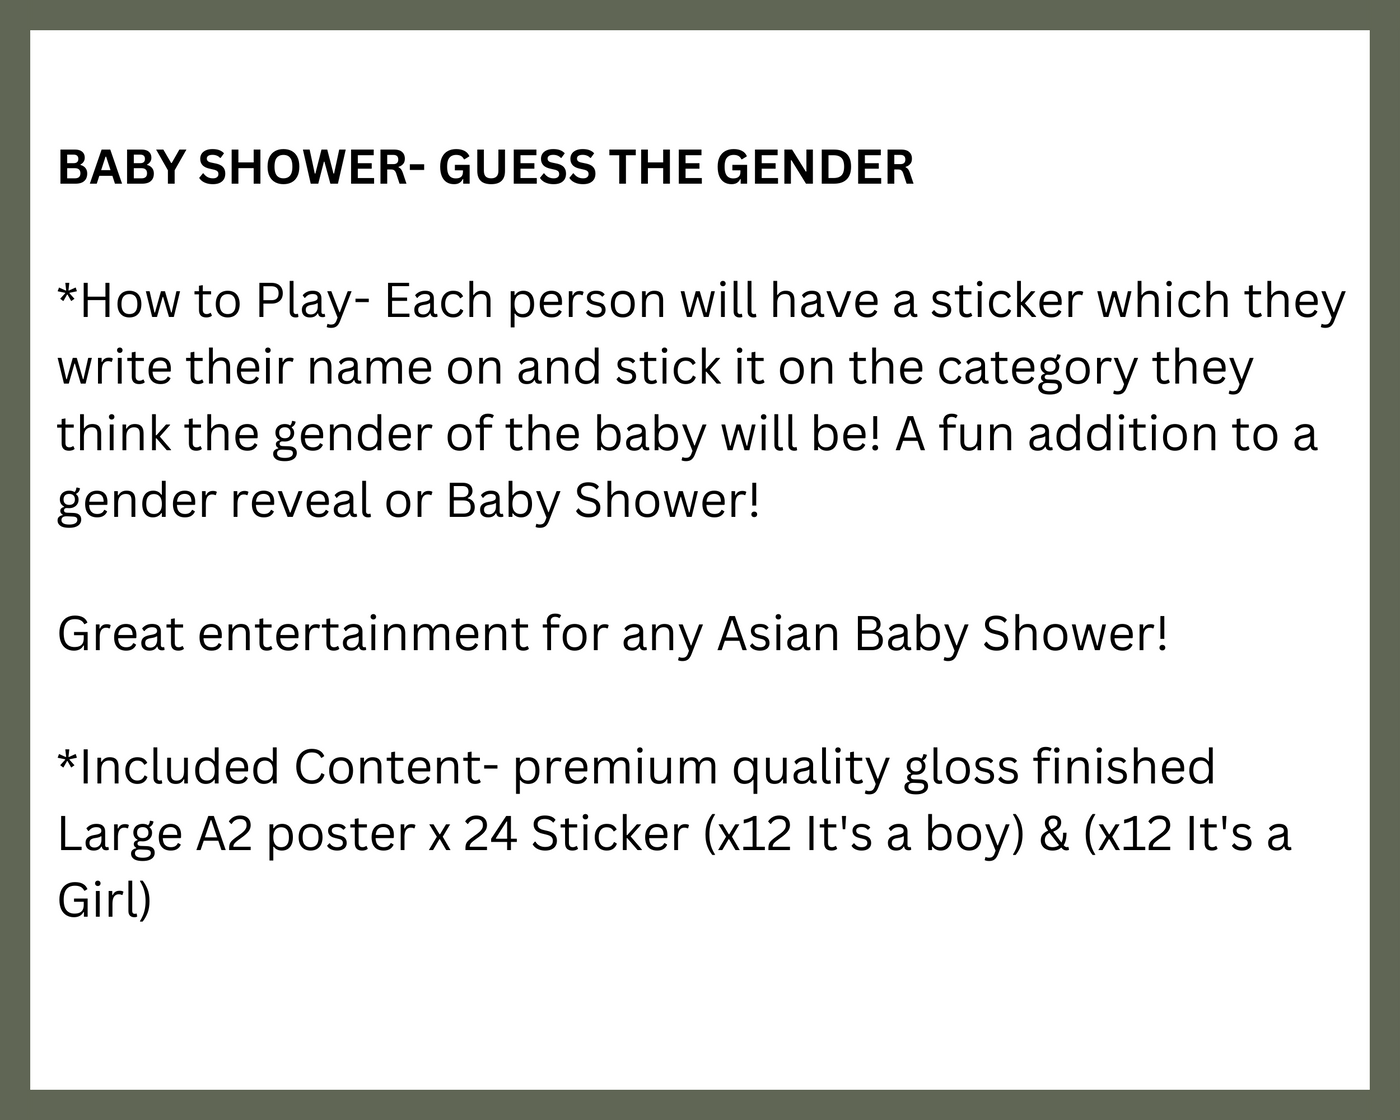 Baby Shower- Guess the Gender (Munda/Kuri)